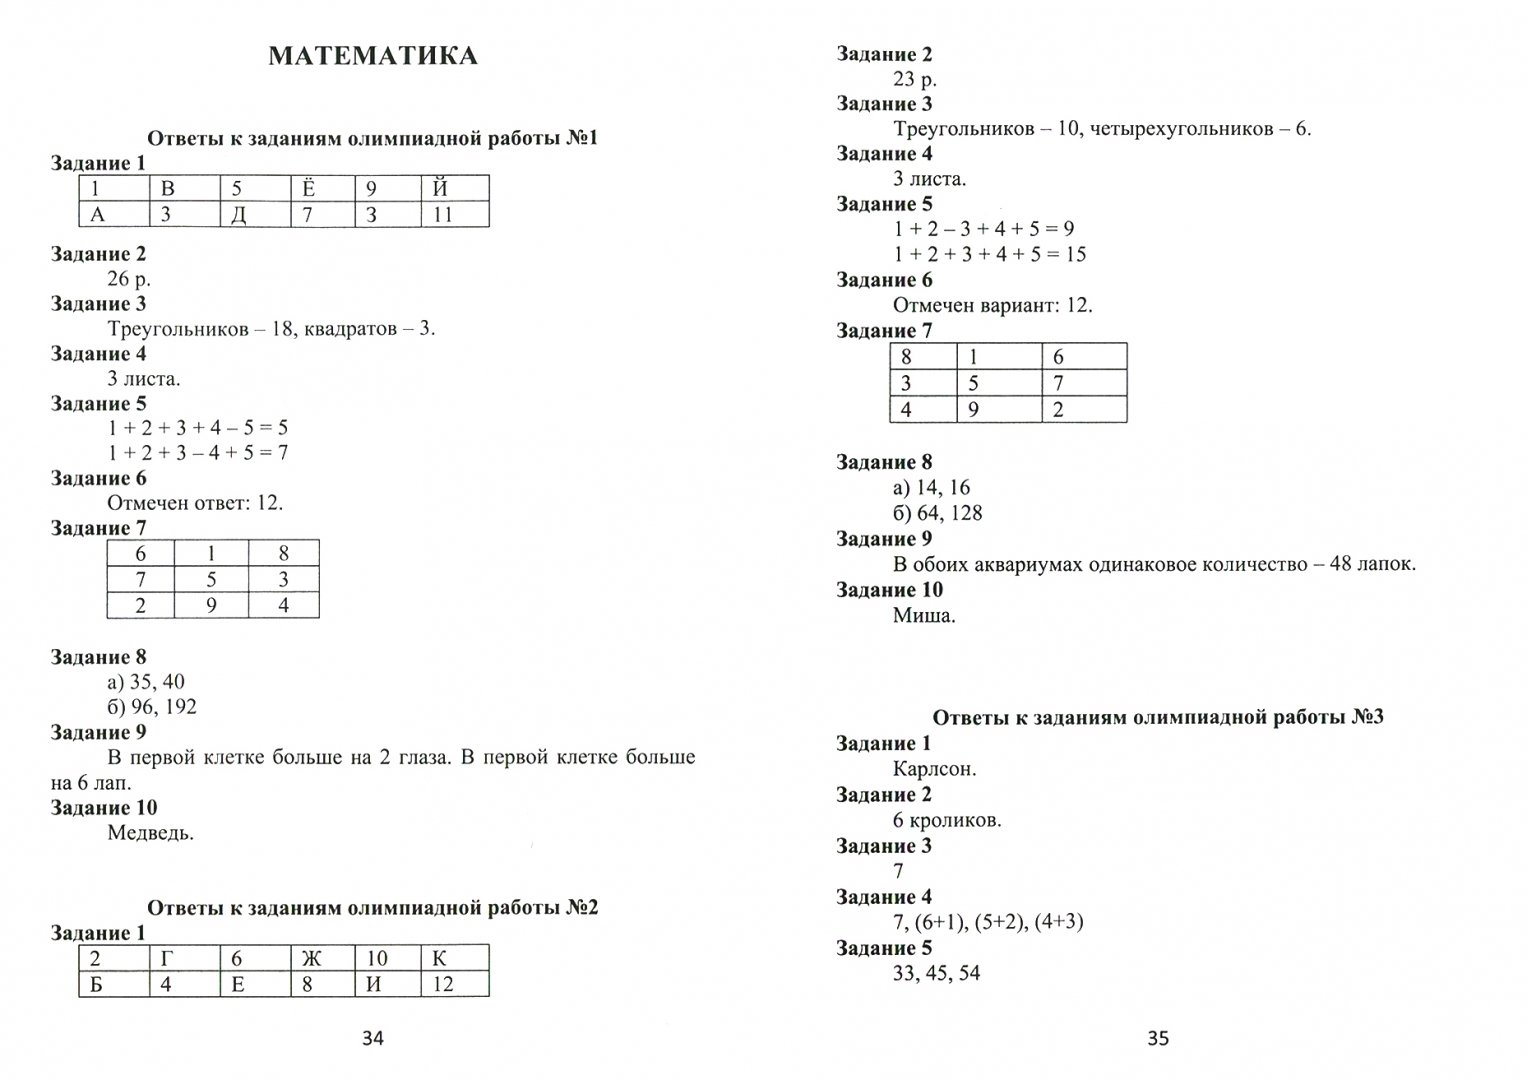 Олимпиадные задания по математике с ответами. Олимпиадные задания 4 класс математика. Олимпиадные задачи 1-4 класс. Ответы на задания.